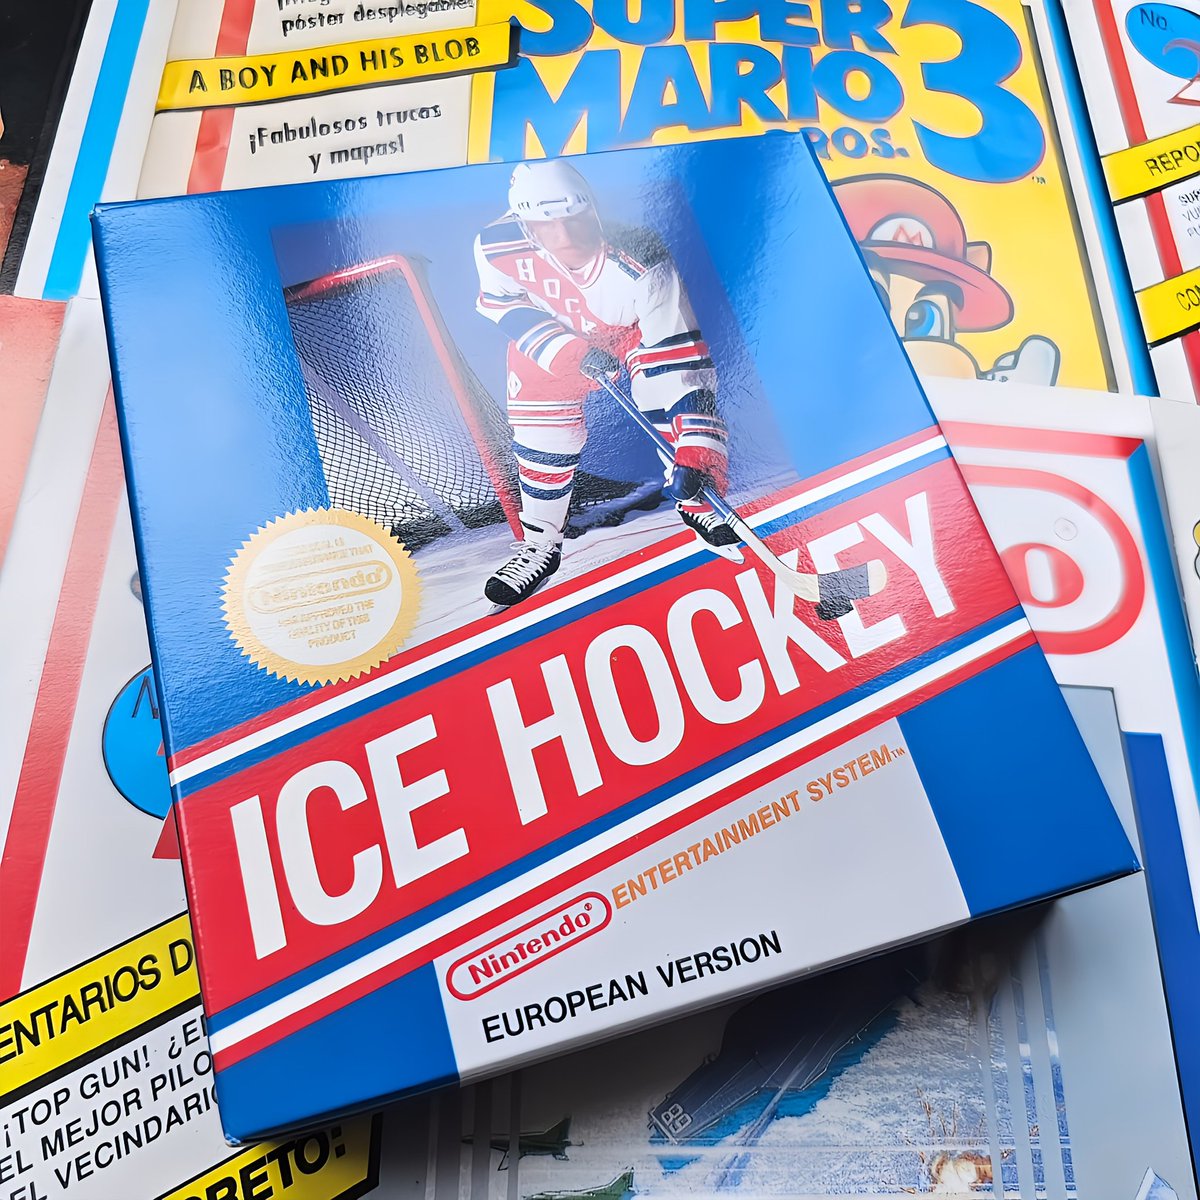 Ice Hockey en su versión caja pequeña, primera tirada y nuevo a estrenar. Hay que ver como cambia la forma de ver un título común en según que estado 🫠 El estado marca la rareza.